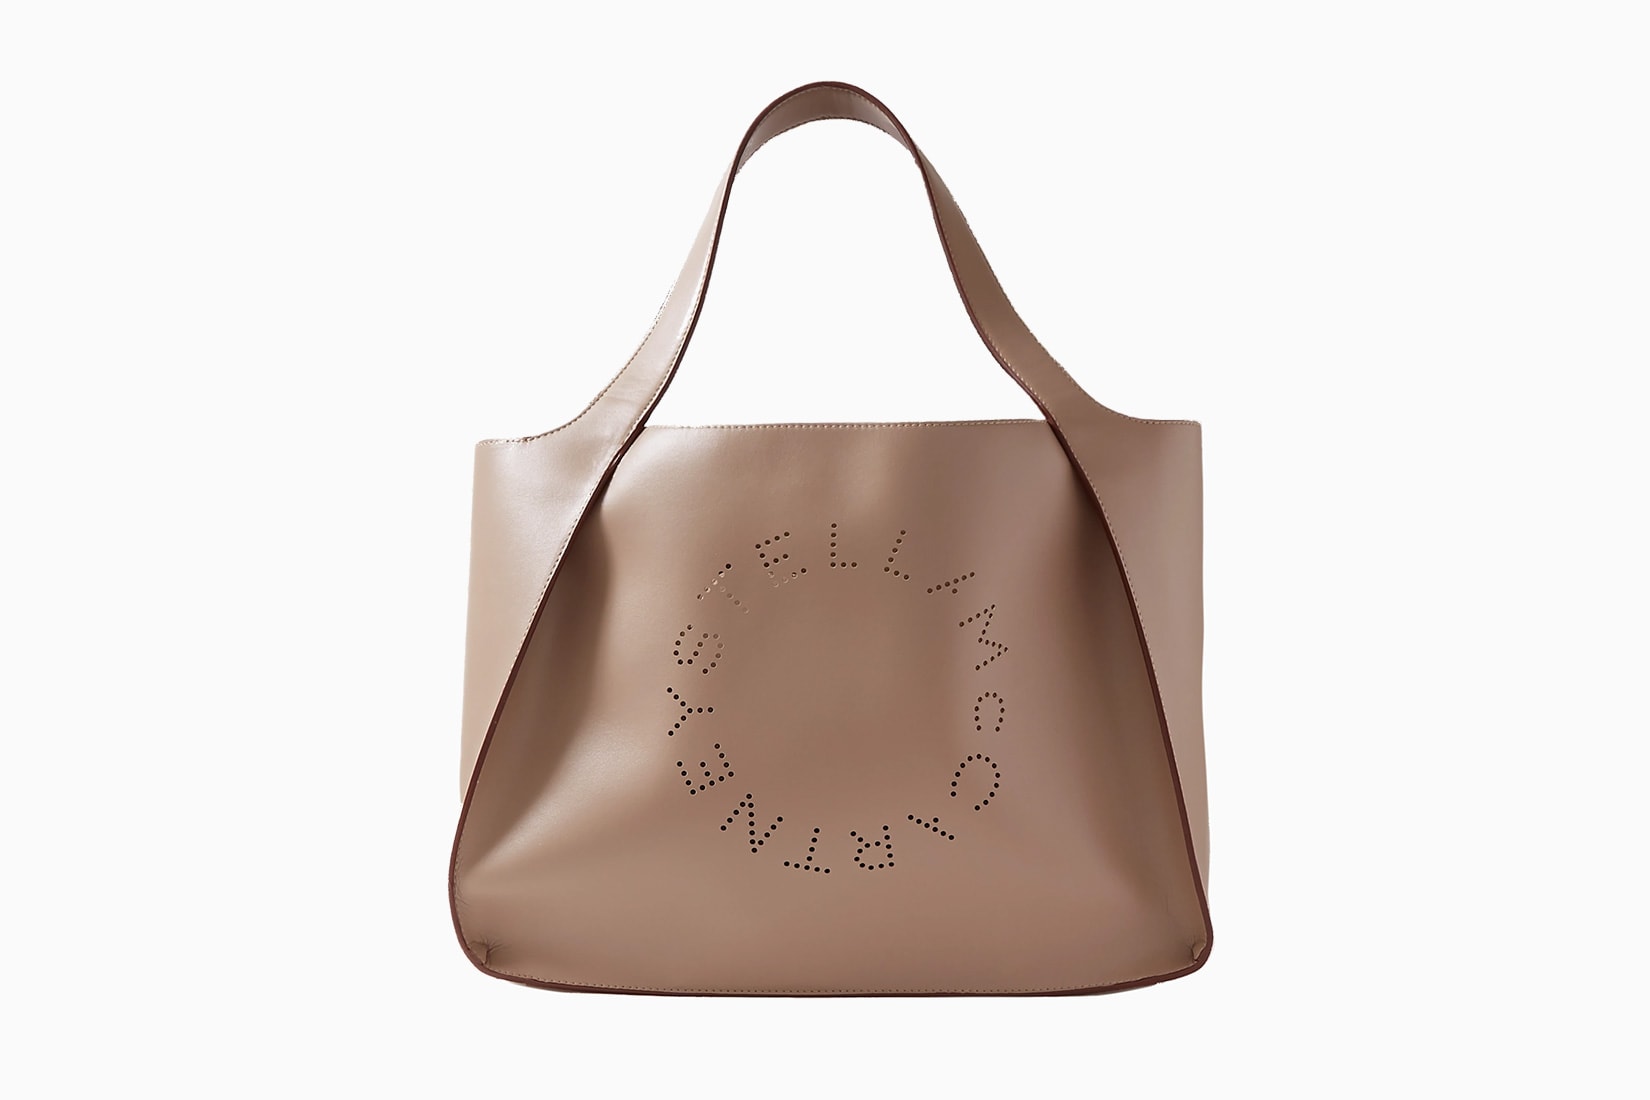 leather shoulder bag- shopper bag Soft leather tote bag Black Leather bag women bags SALE soft leather bag leather handbag